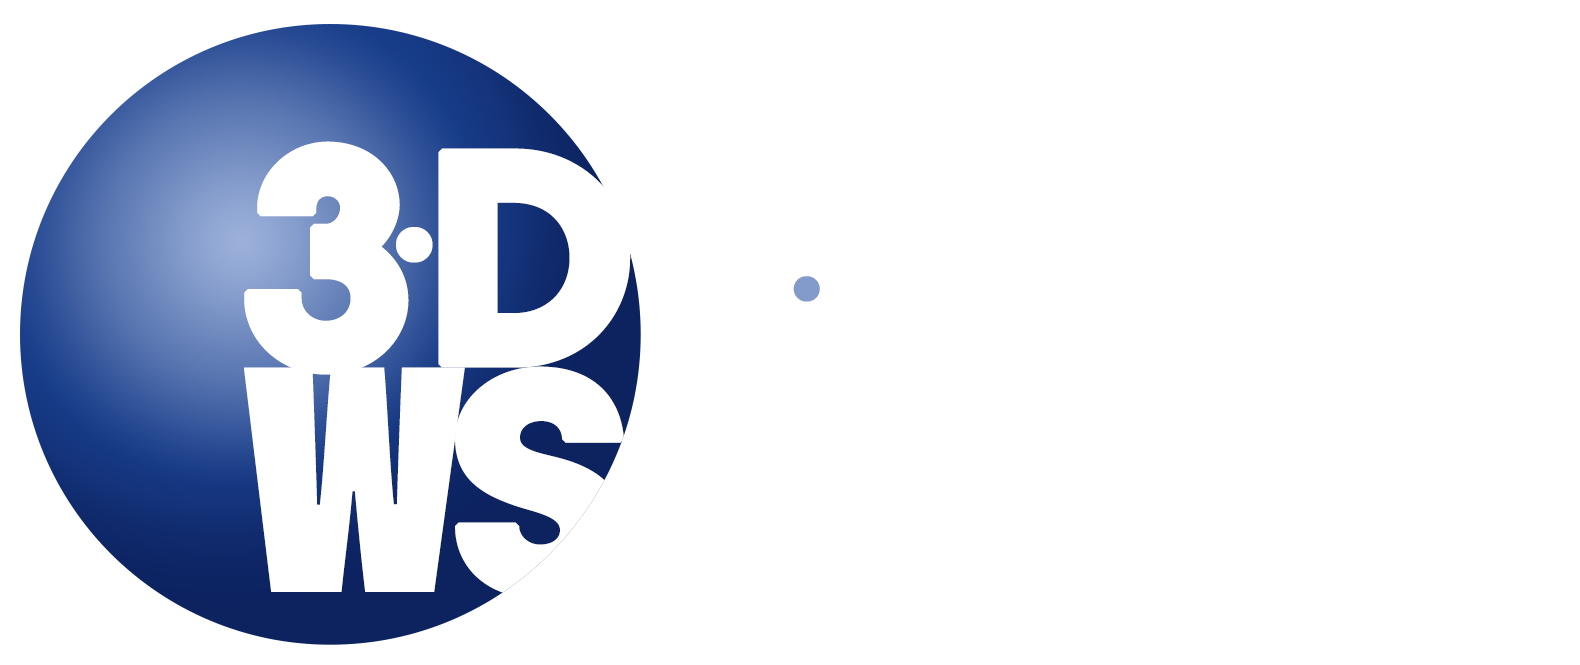 3D Worldview Survey